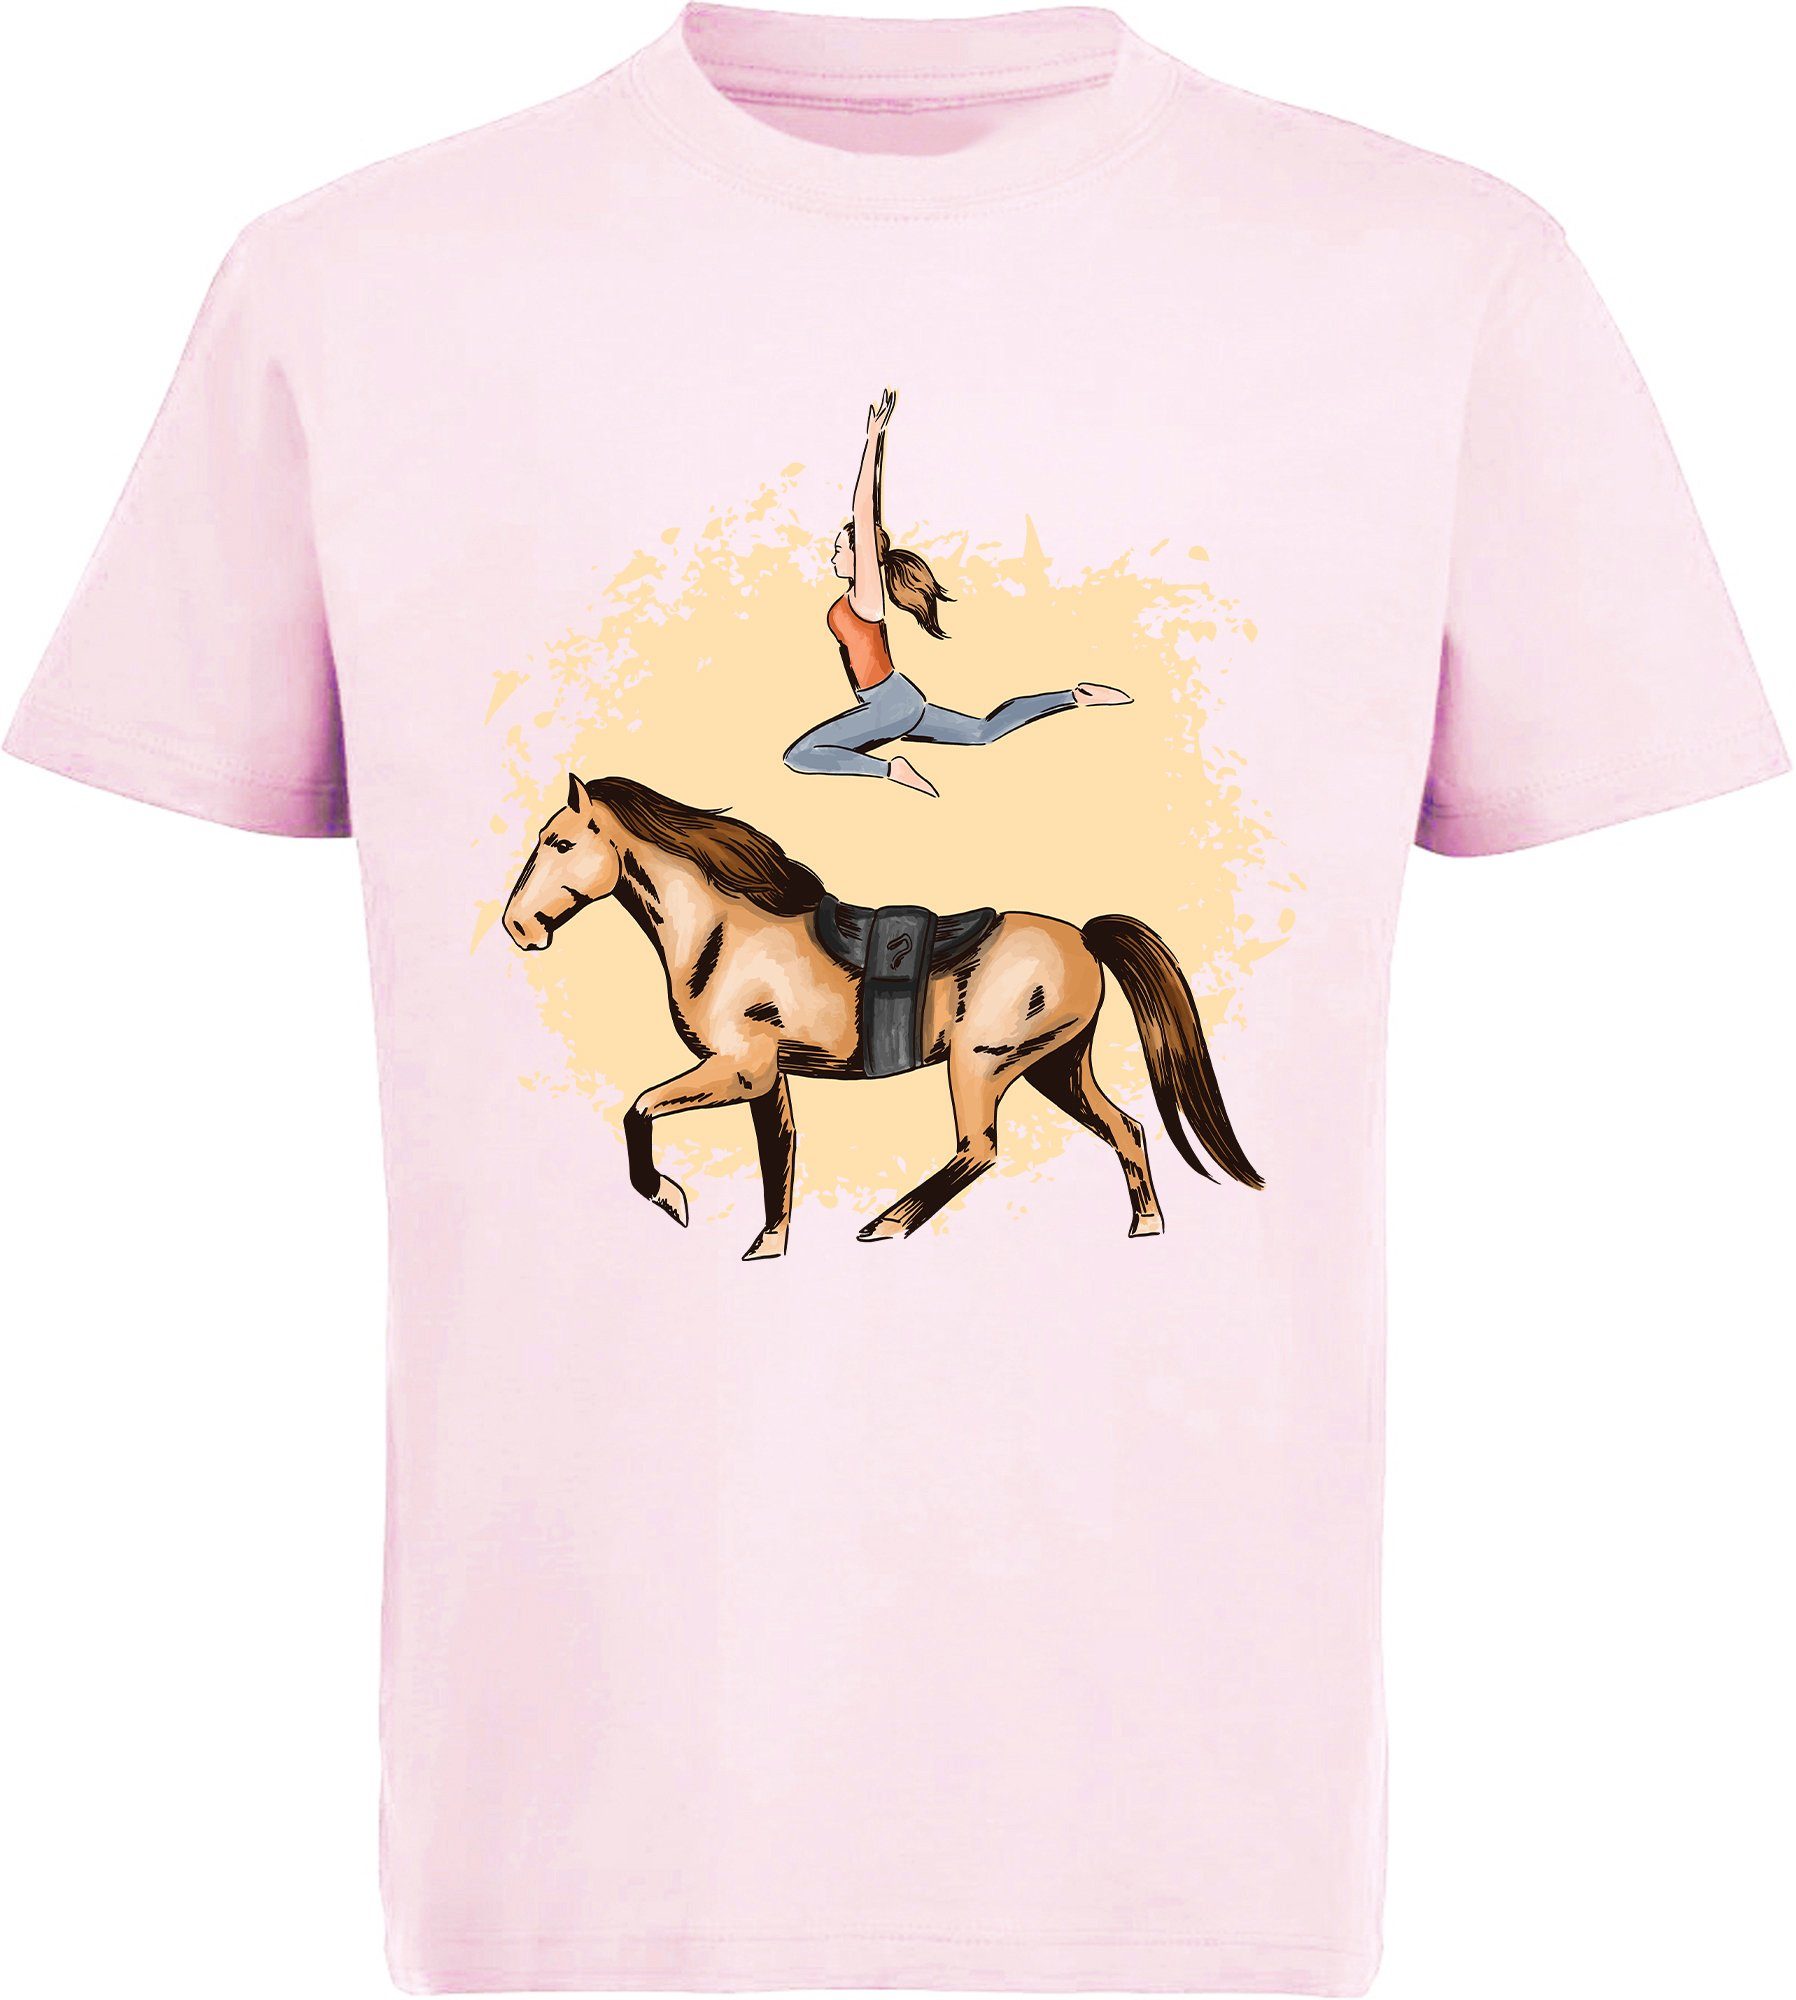 Baumwollshirt MyDesign24 bedrucktes Turnerin mit mit Mädchen Print-Shirt T-Shirt i172 Pferde rosa Aufdruck,